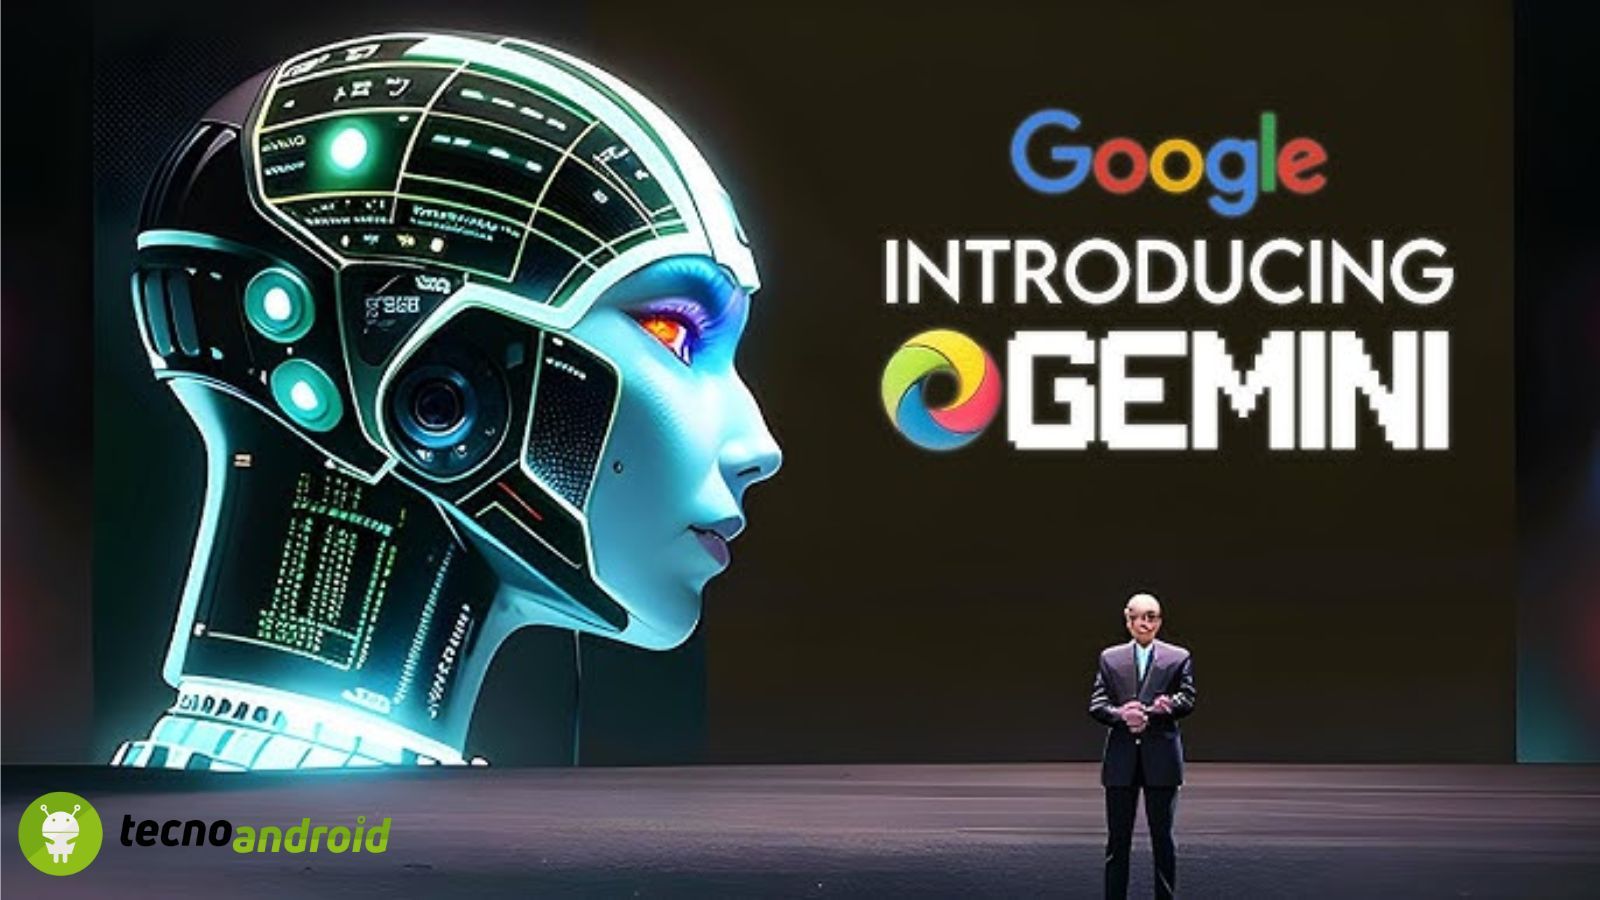 Gemini Intelligenza Artificiale di Google